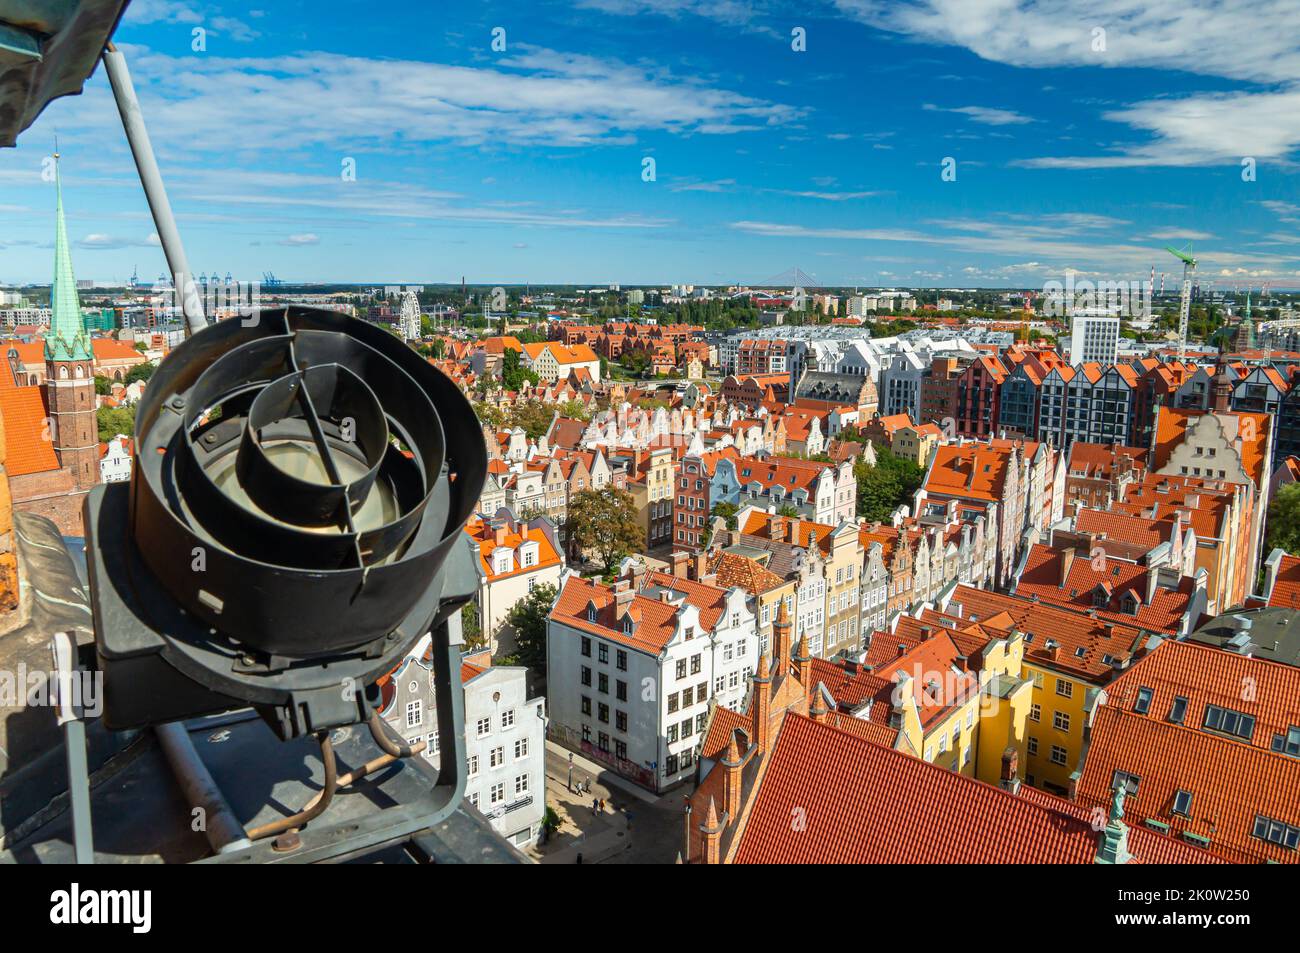 Blick auf die Altstadt von Danzig vom Rathausturm. Alte Häuser mit Ziegeldächern. Riesenrad im Hintergrund Stockfoto